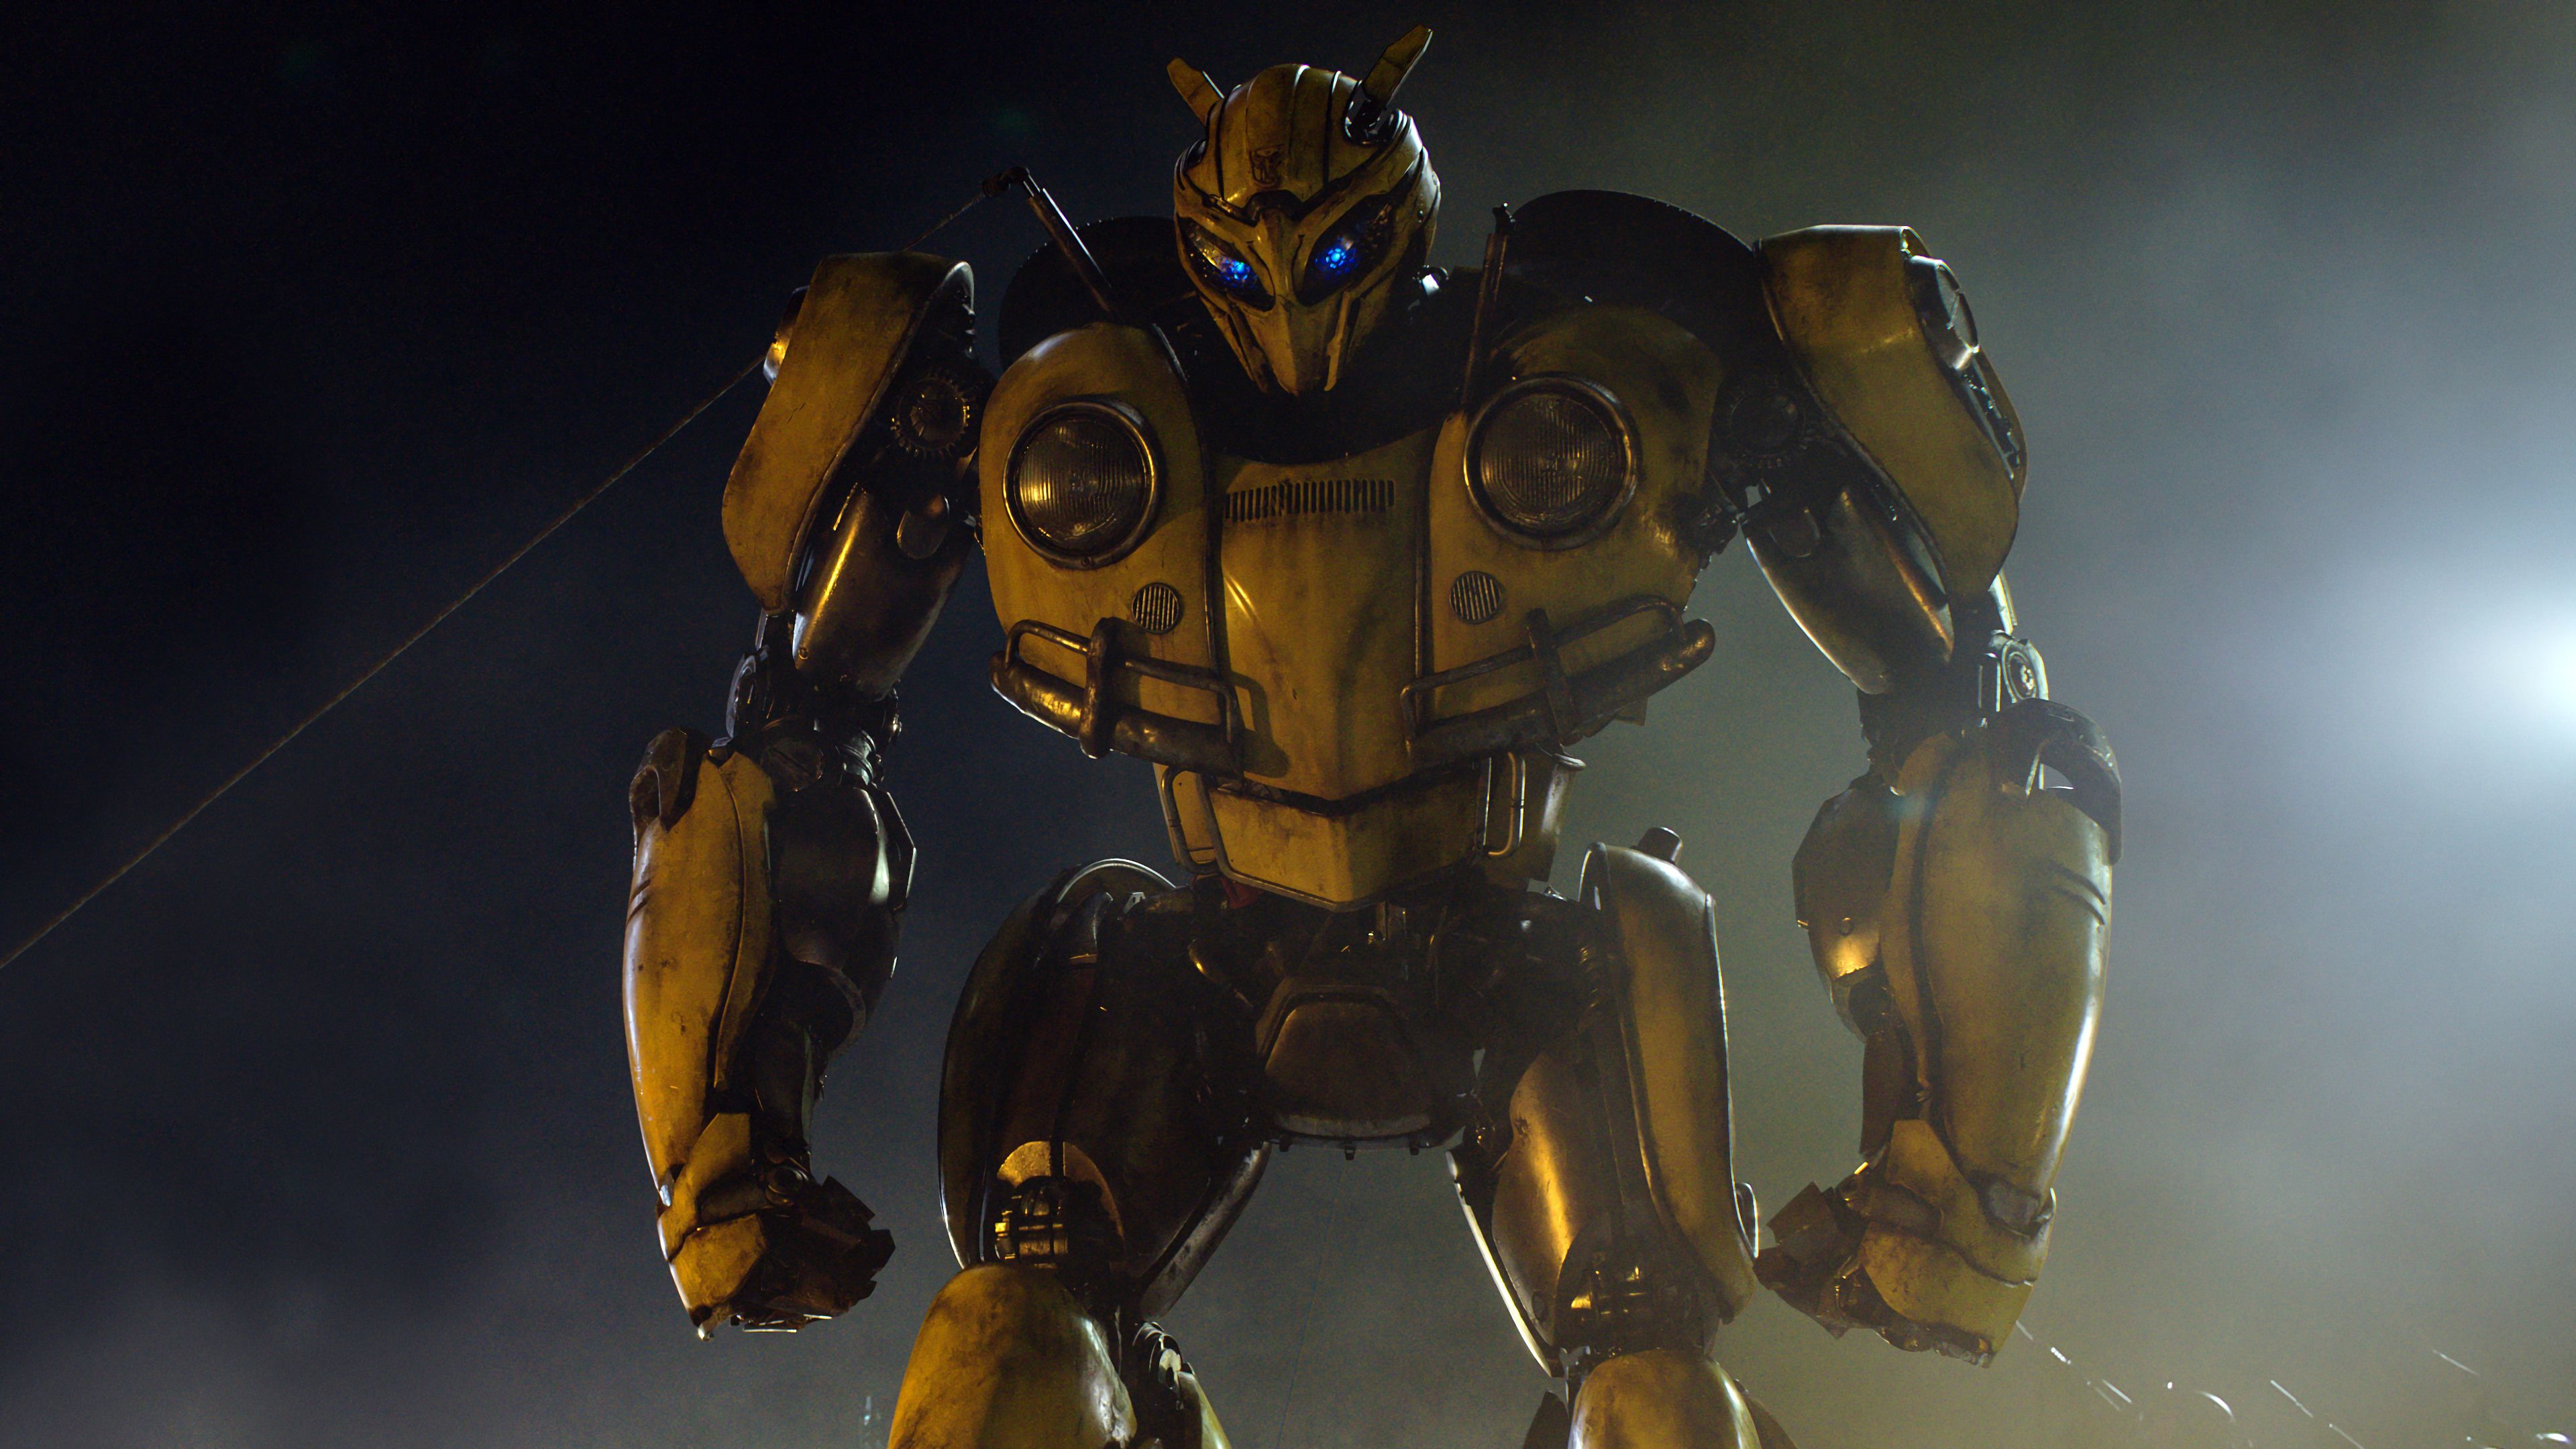 Transformers Bumblebee Movie Drawings - HD Wallpaper 